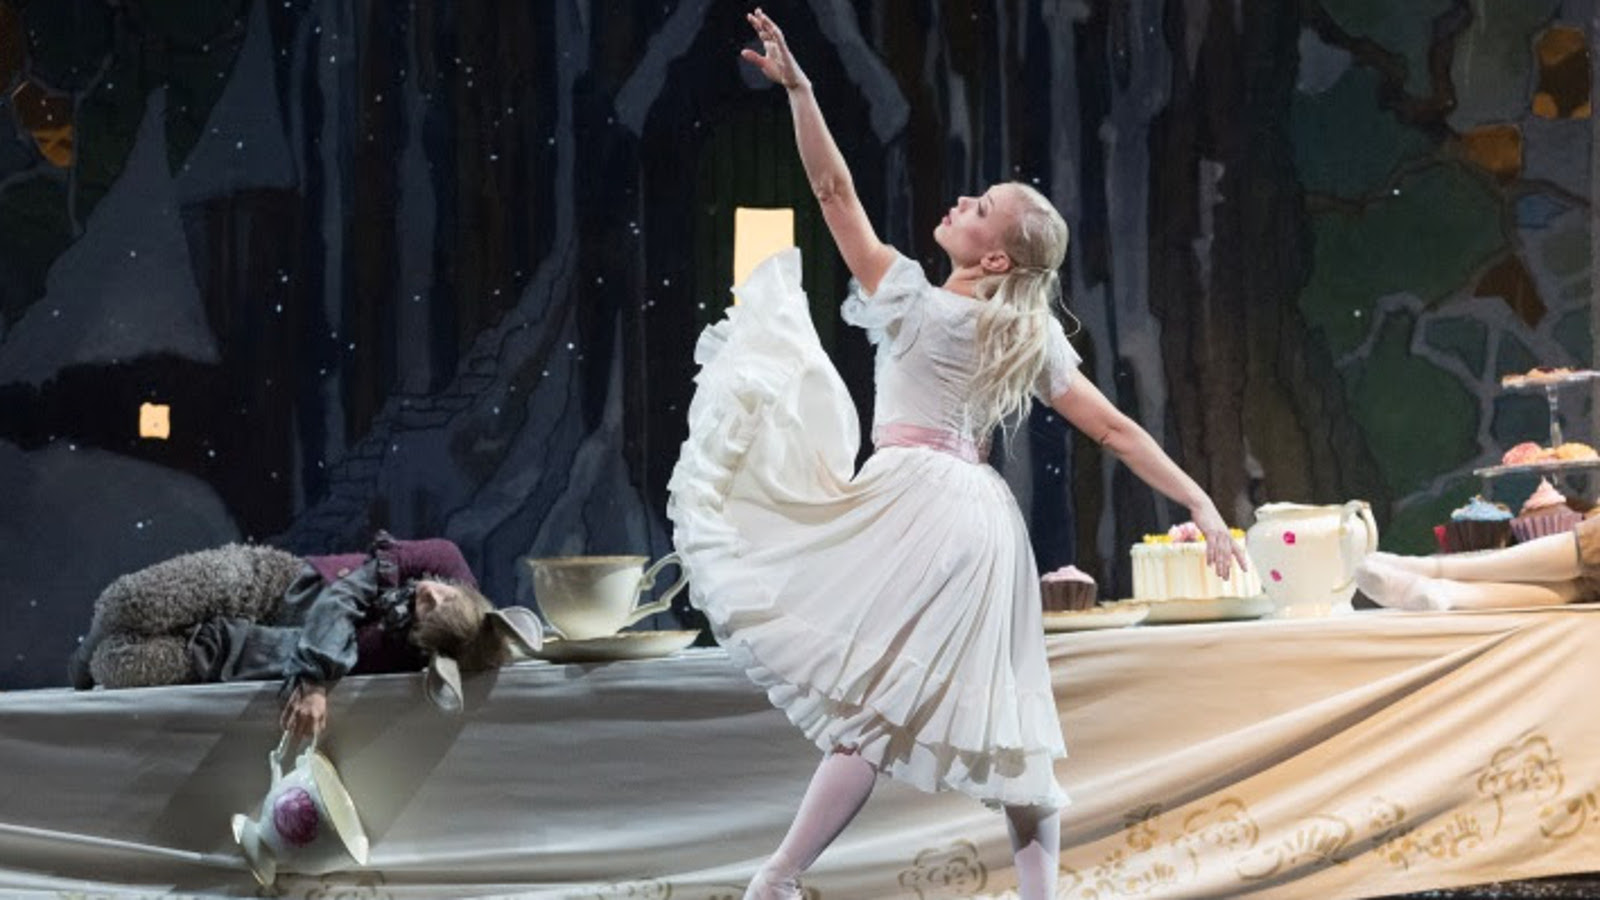 Kuvassa on Liisa Ihmemaassa baletin Liisa, Linda Haakana.  Hänellä on vaalea mekko ja hän osoittaa vasemmalla kädellään ylöspäin.  Lattialla makaa kani vasemmalla harmaassa puvussa.  Taustalla on tumman harmaa verho ja oikealla lattialla on kakkuja.